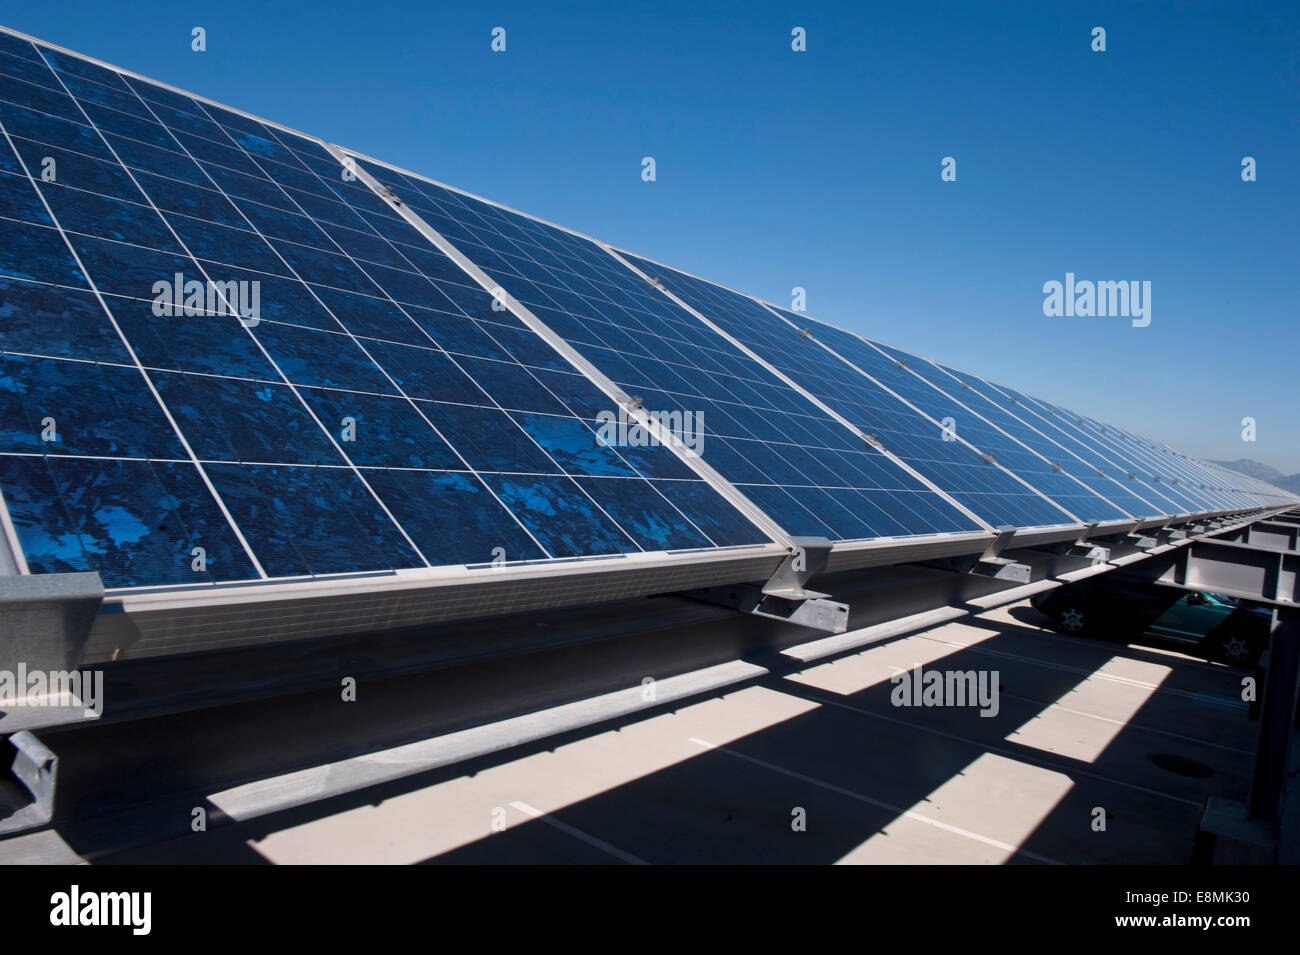 Nápoles, Italia, 17 de octubre de 2013 - Una vista de paneles solares instalados en la parte superior de un garaje en la actividad de Apoyo Naval Nápoles C Foto de stock